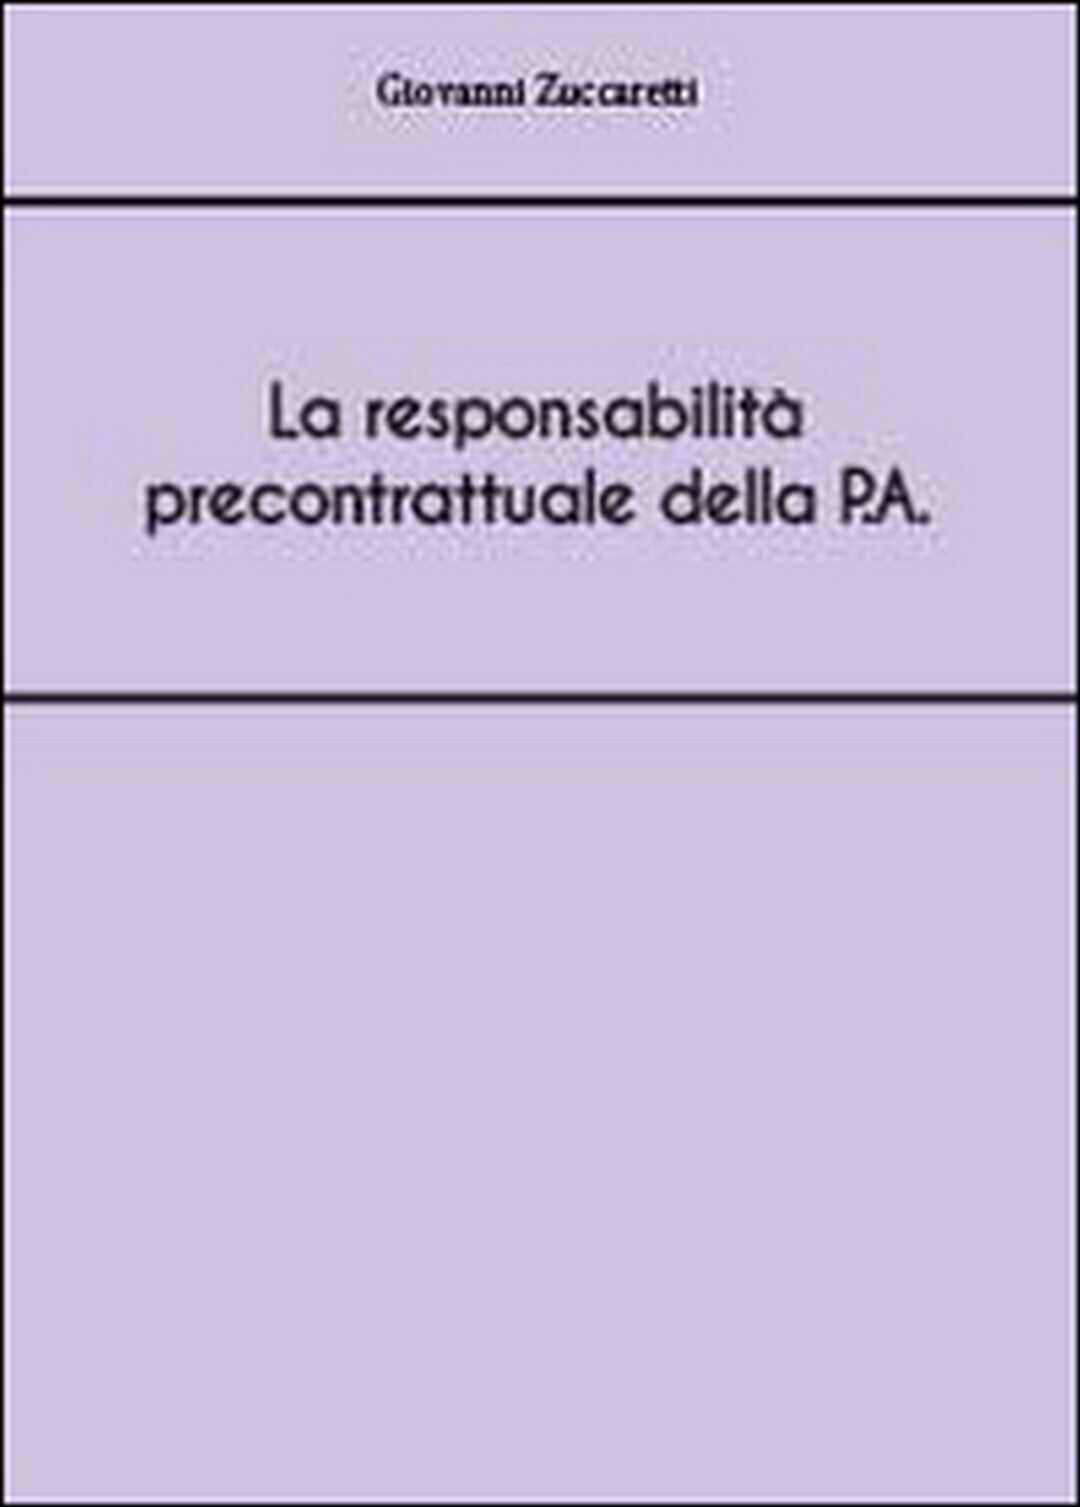 La responsabilit? precontrattuale della P.A , Giovanni Zuccaretti,  2014